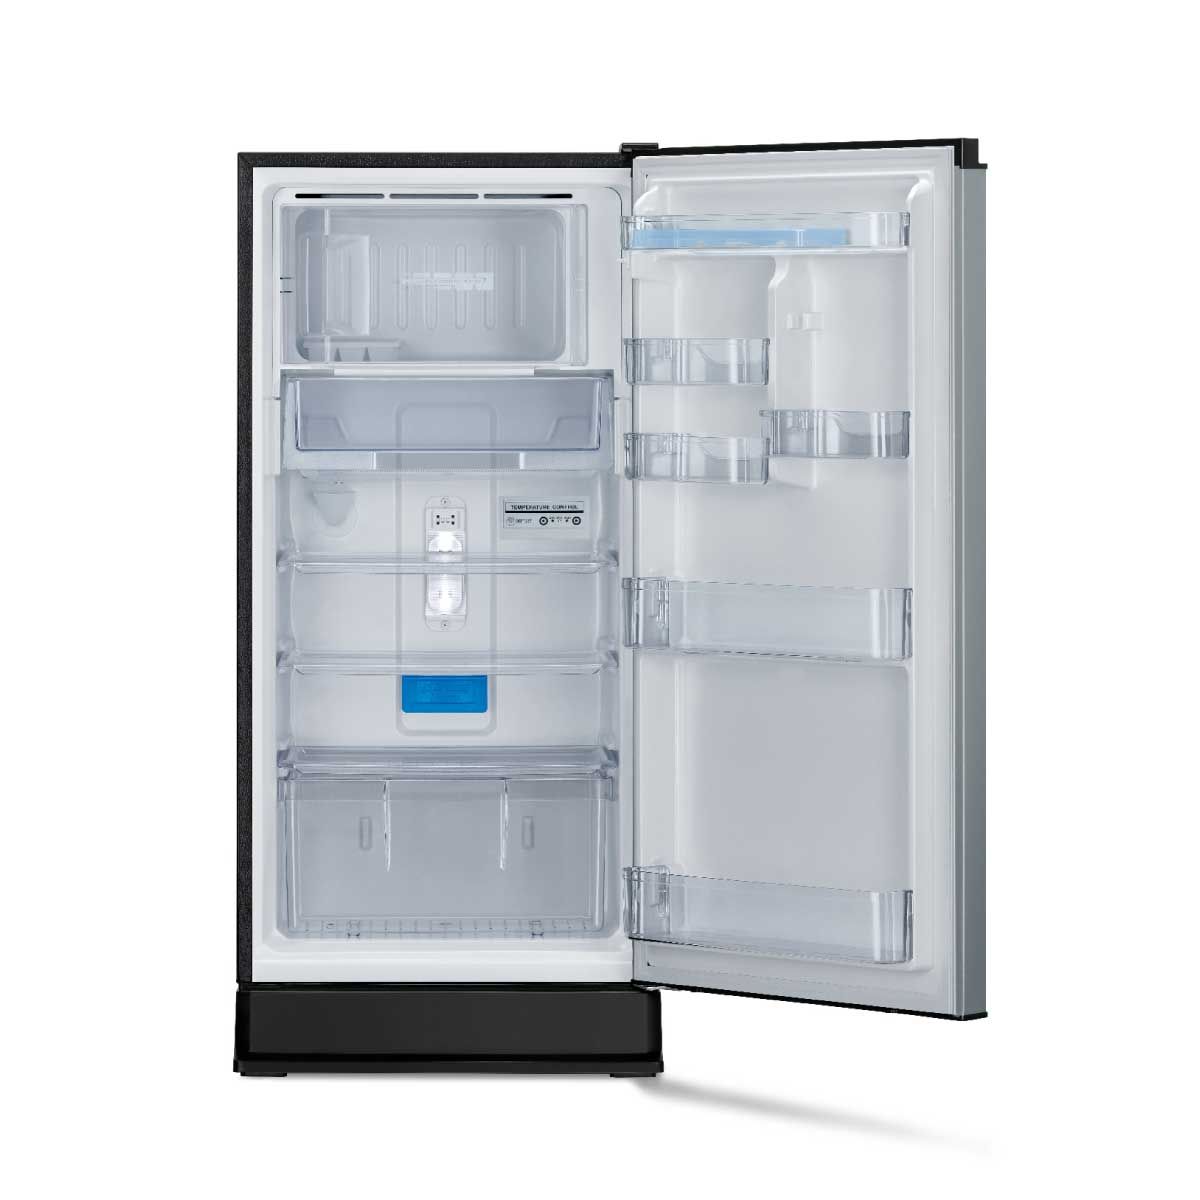 MITSUBISHI ELECTRIC ตู้เย็น 1 ประตู  สีซิลเวอร์ 6.1Q รุ่น MR-18TA